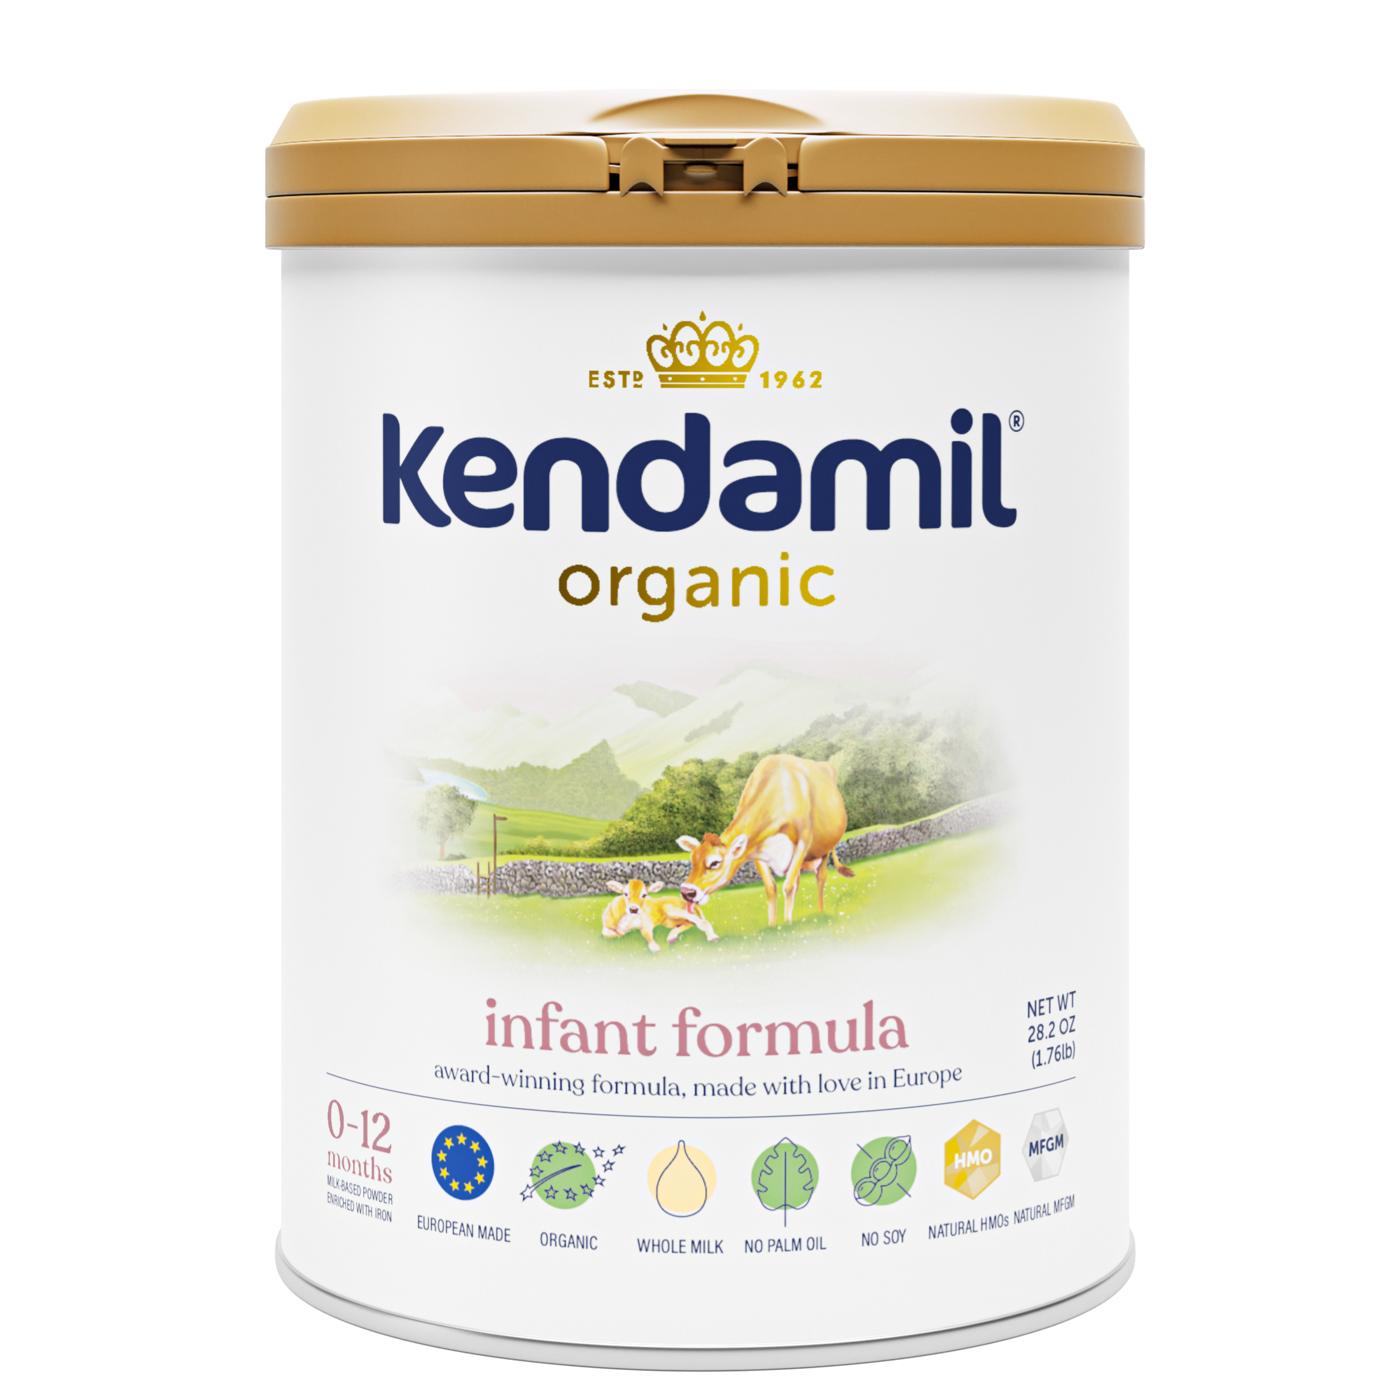 Kendamil Organic Infant Formula; image 1 of 3